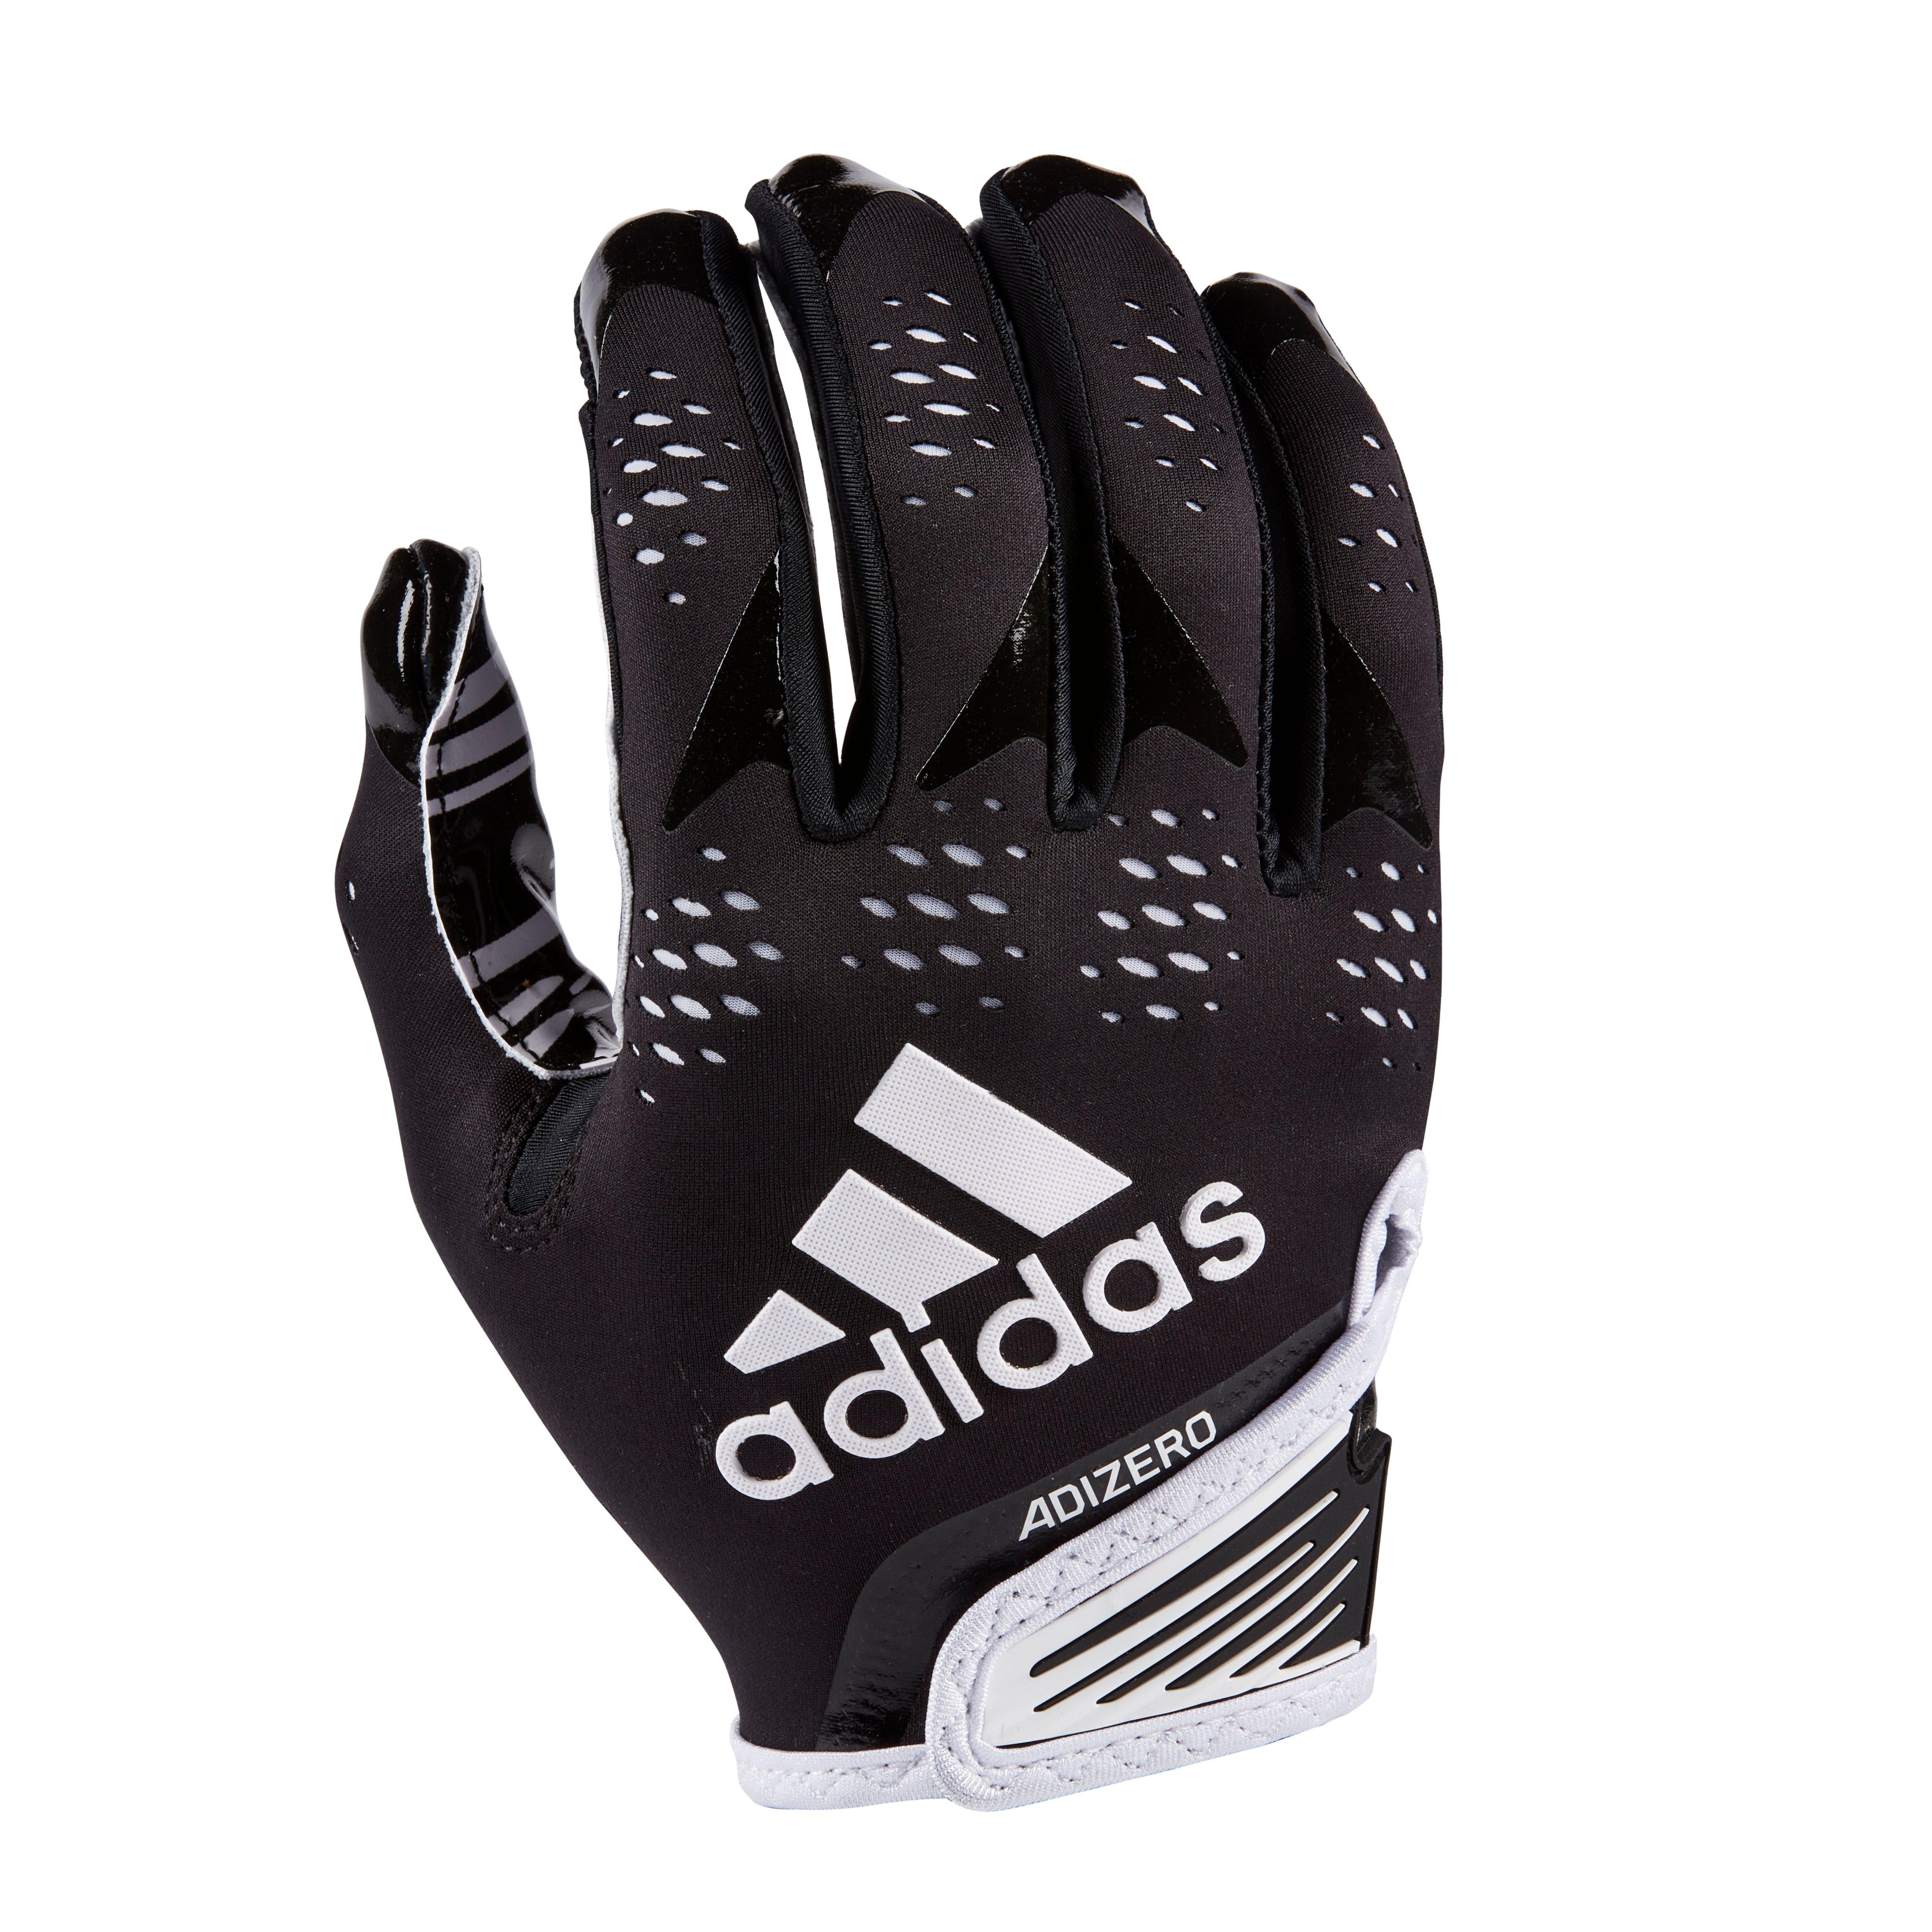 telar Gracia Oeste adidas Adizero 12 Football Receiver Gloves - Black/White